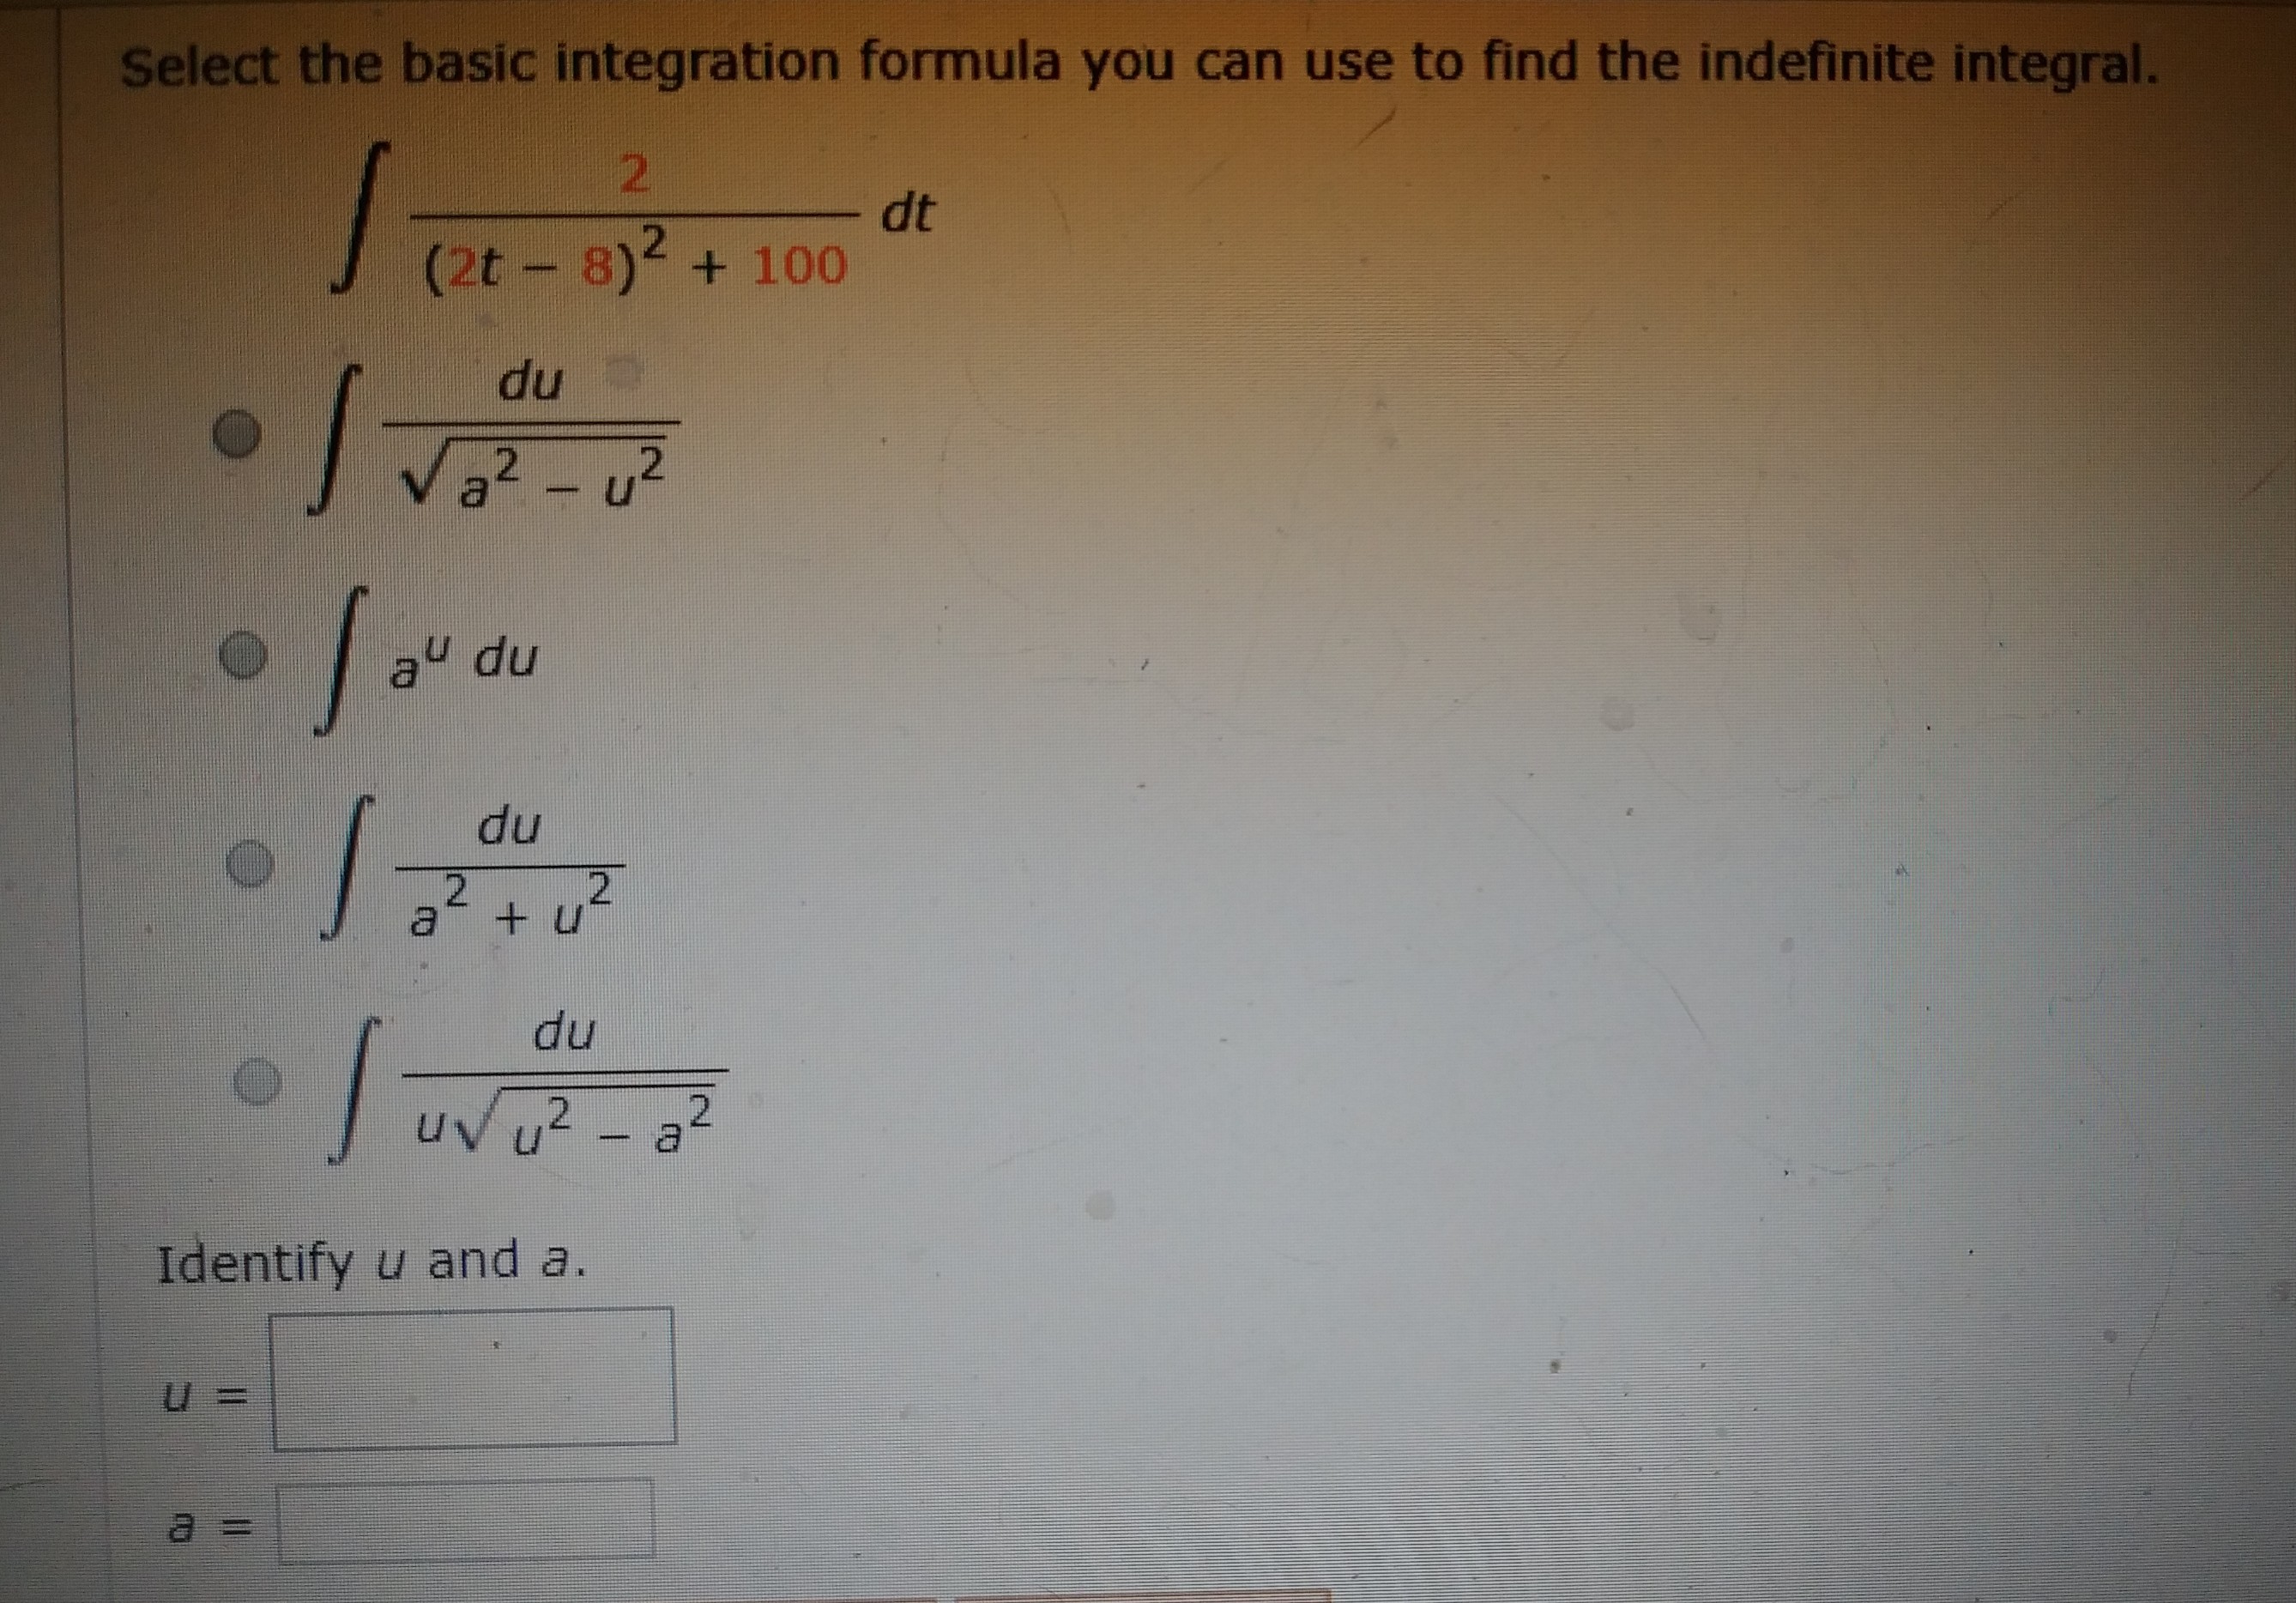 Select the basic integration formula you can use to find the indefinite integral.
2.
dt
(2t-8)2 + 100
du
Va2 -u²
np ne
du
du
2+u²
du
uv u2 - a2
Identify u and a.
u%3D
